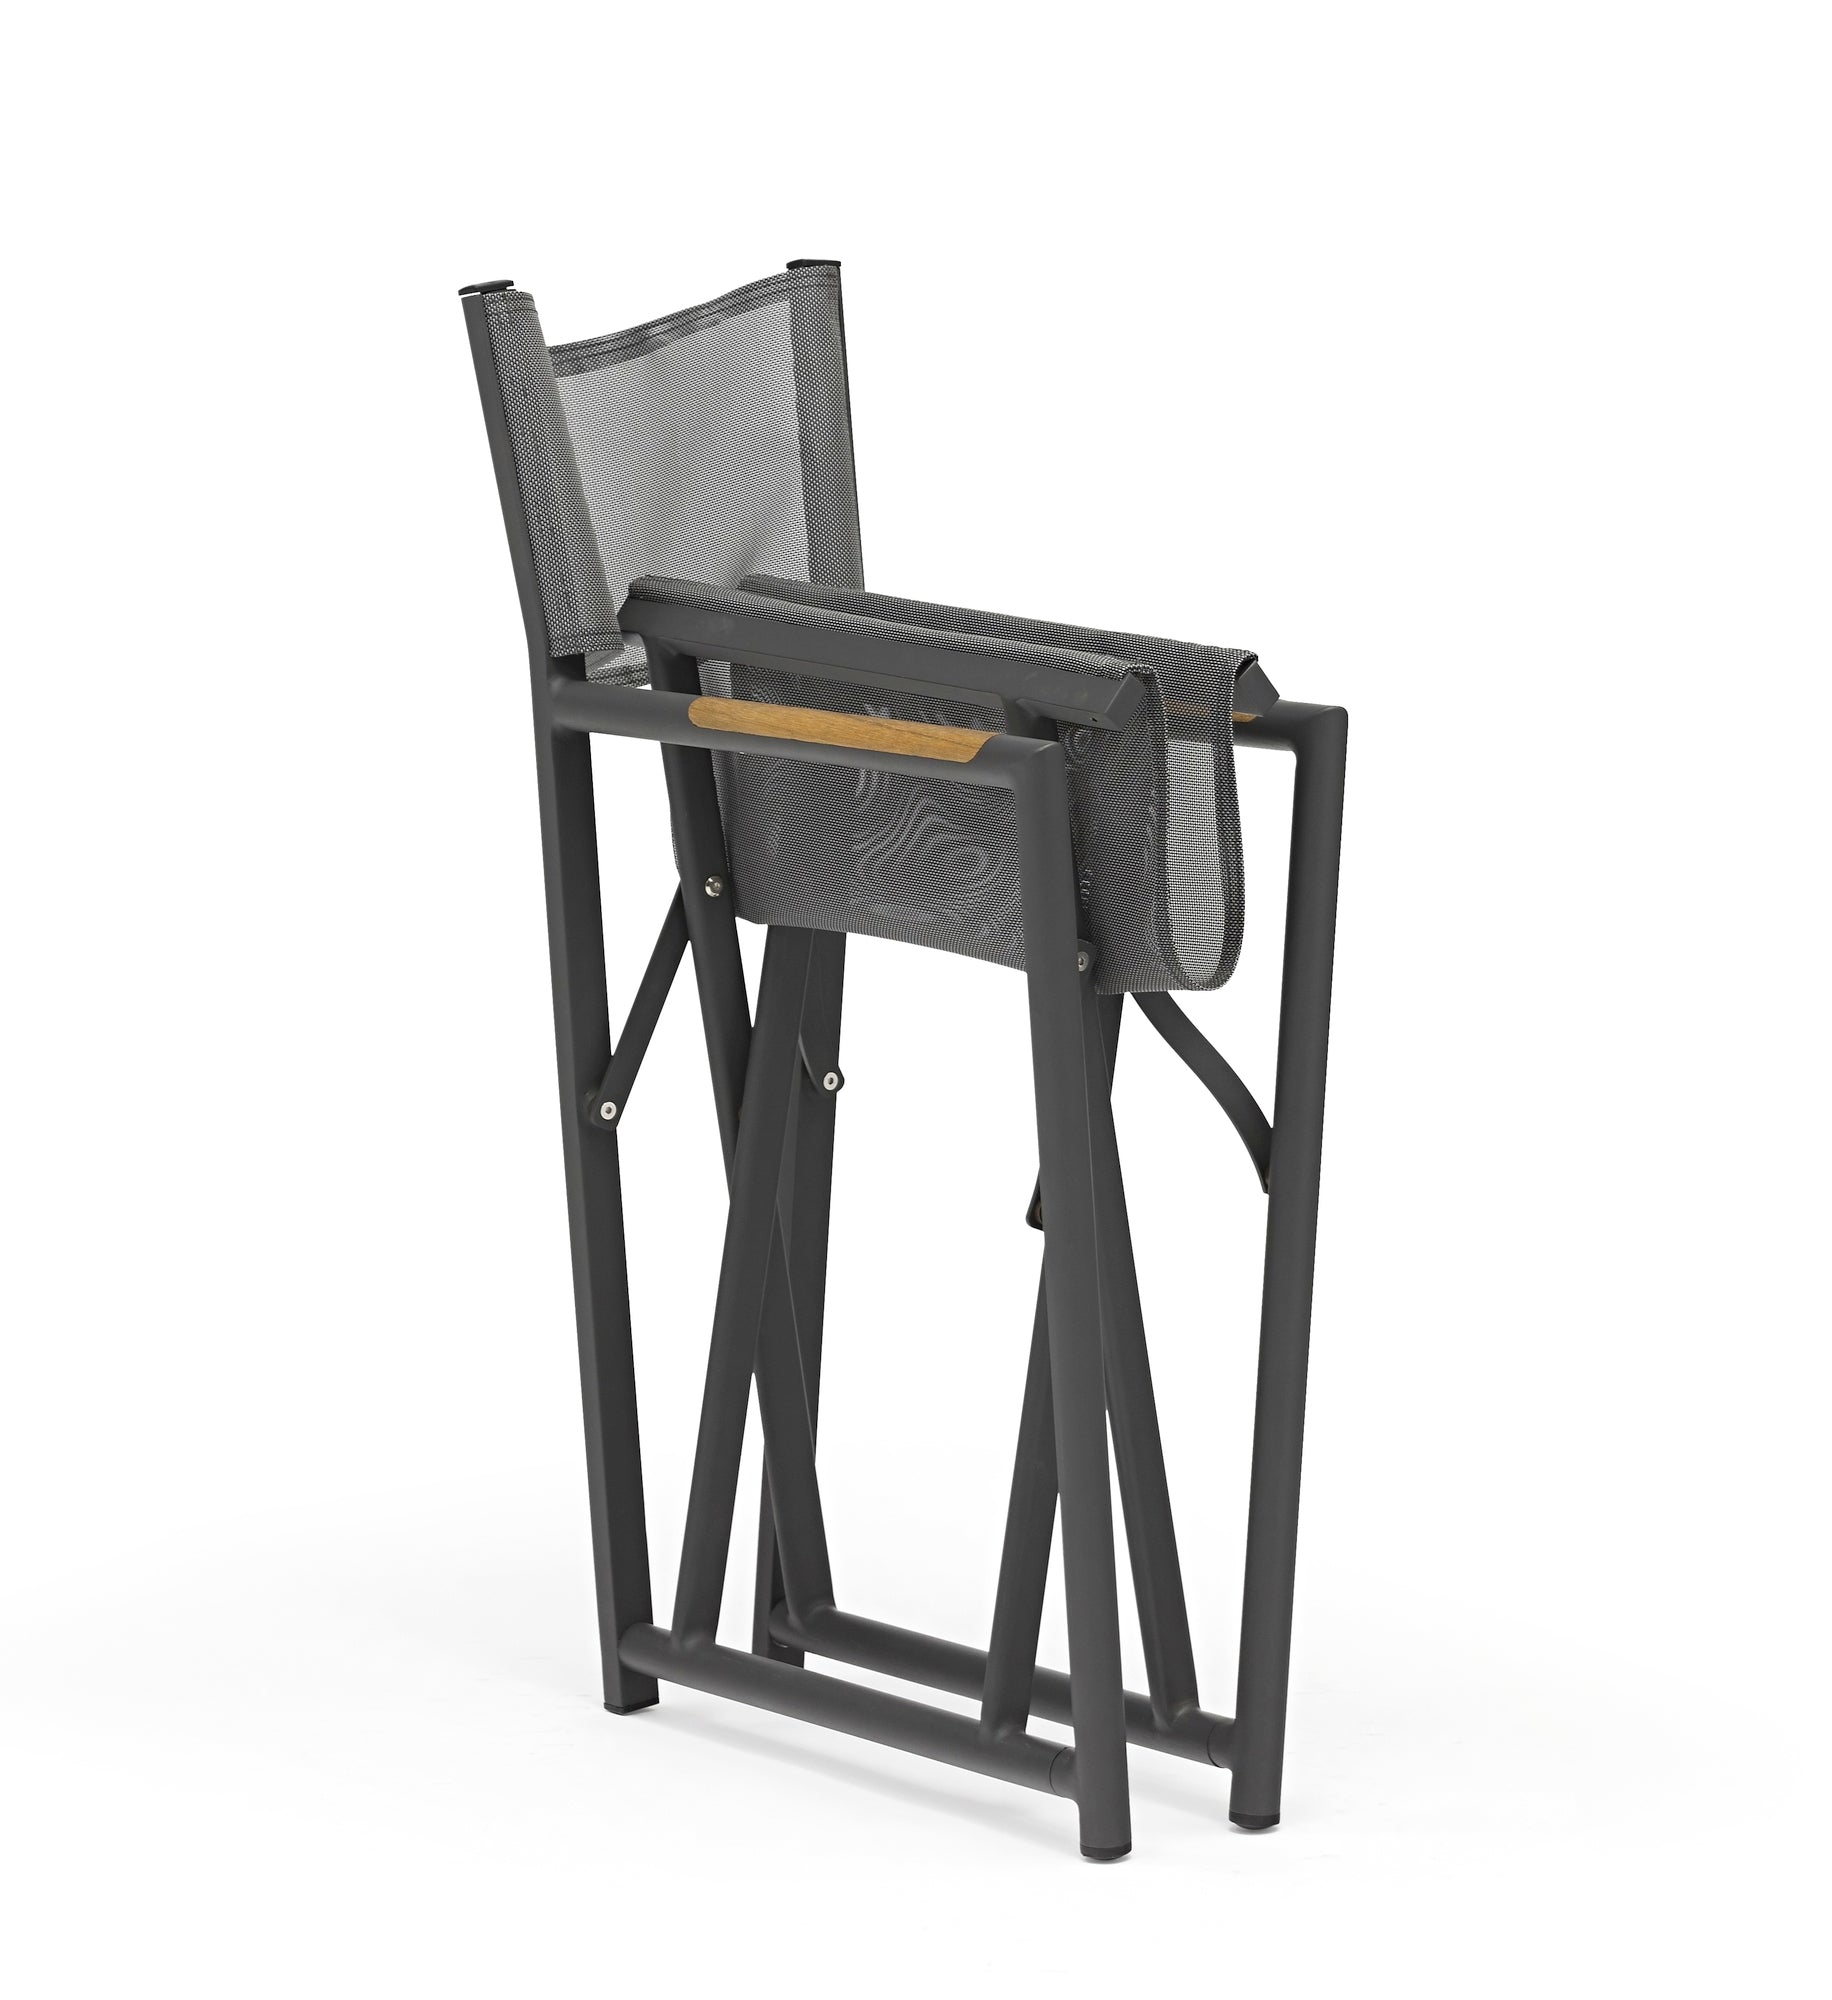 Anthrazitfarbener Polly Garten-Regie-Stuhl mit grauer Textilenbespannung und Teakholz-Armstützen, leicht faltbar und langlebig, erhältlich bei Gartenmöbelshop.at.